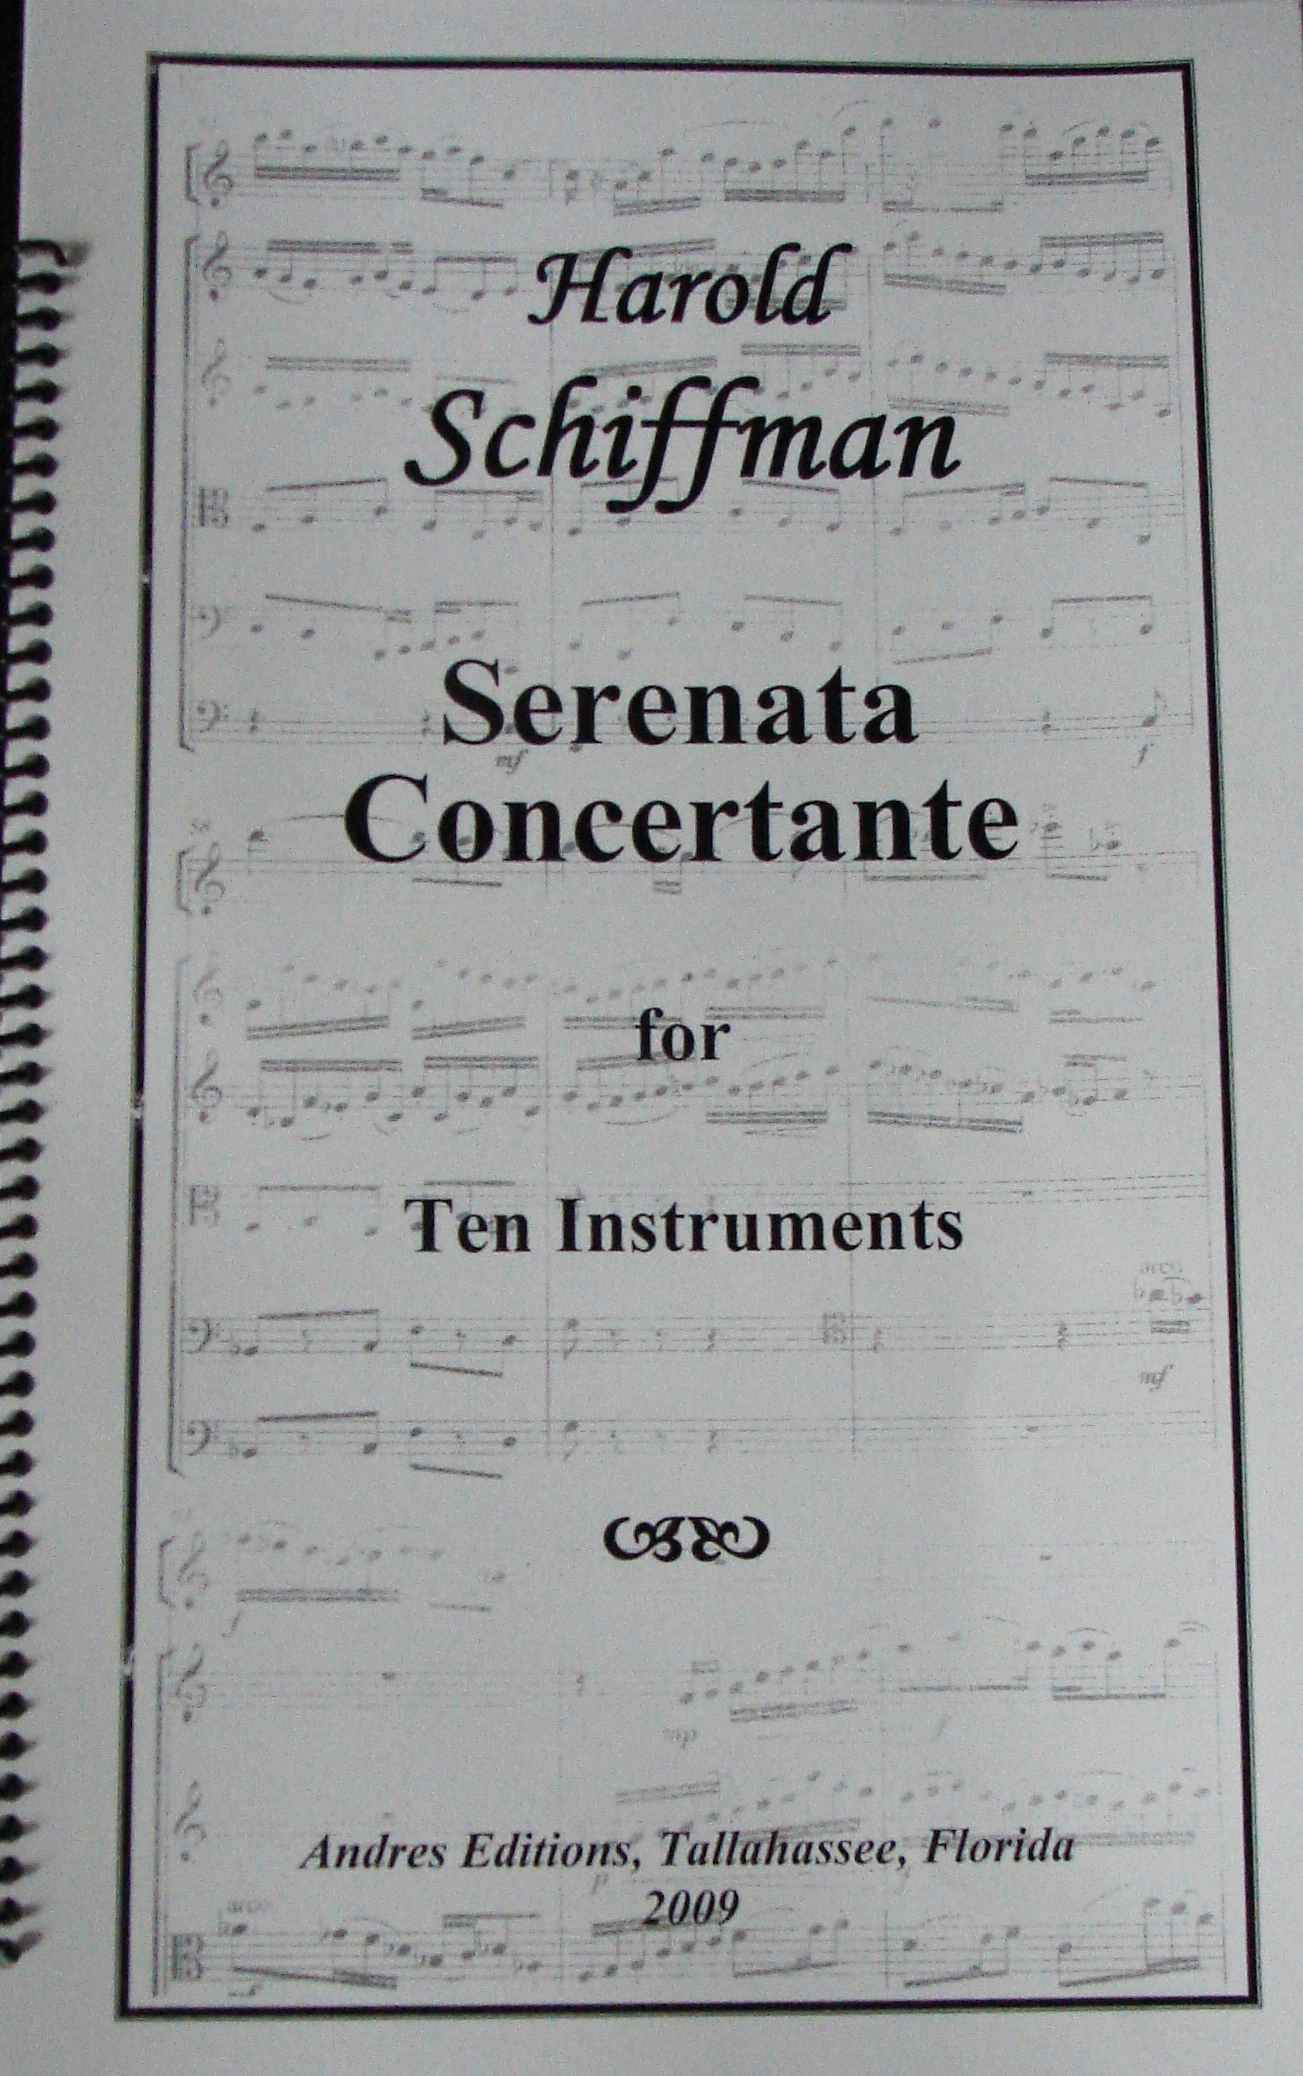 Photo of the Serenata Concertante (2009) score cover